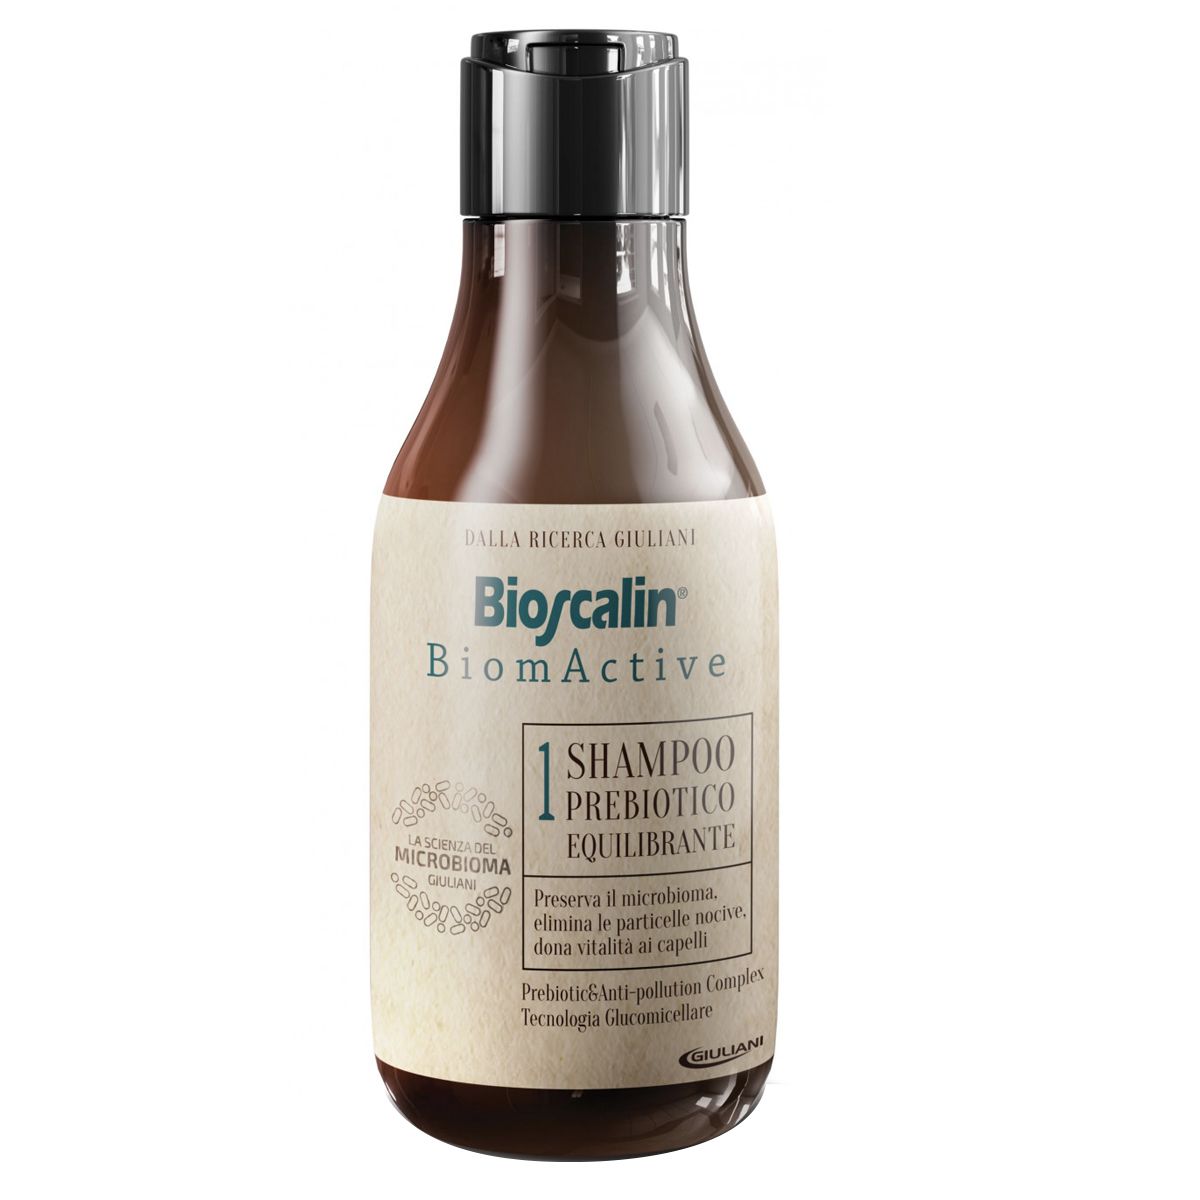 Bioscalin Biomactive Shampoo Prebiotico Rigenerante 200ml